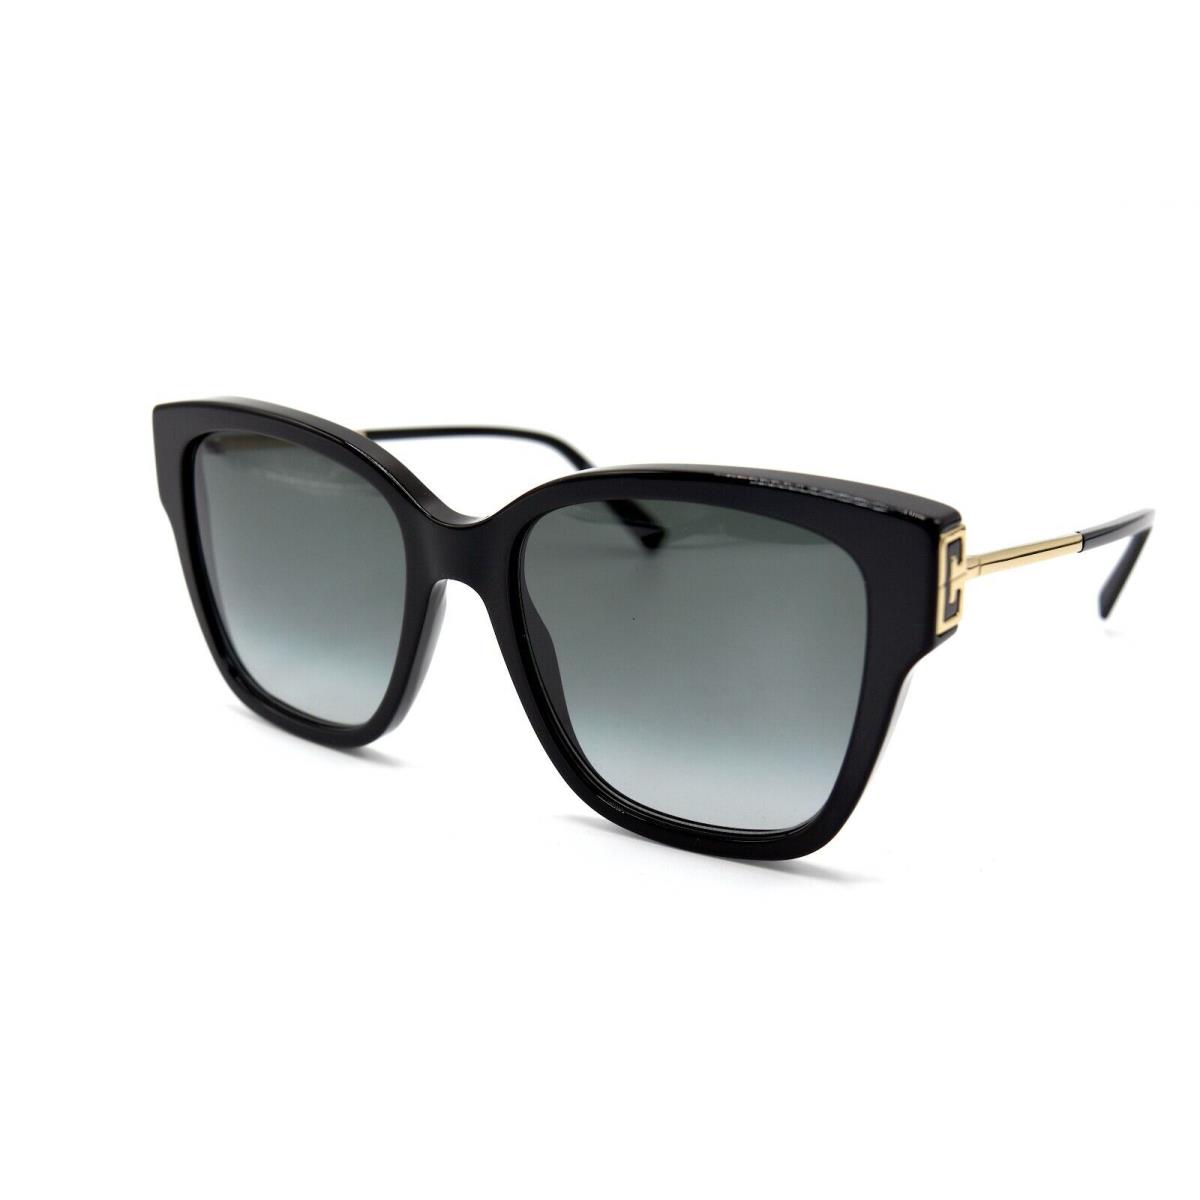 Givenchy GV7191/S 807 Black Gold Grey Sunglasses 55-19 Italy ...